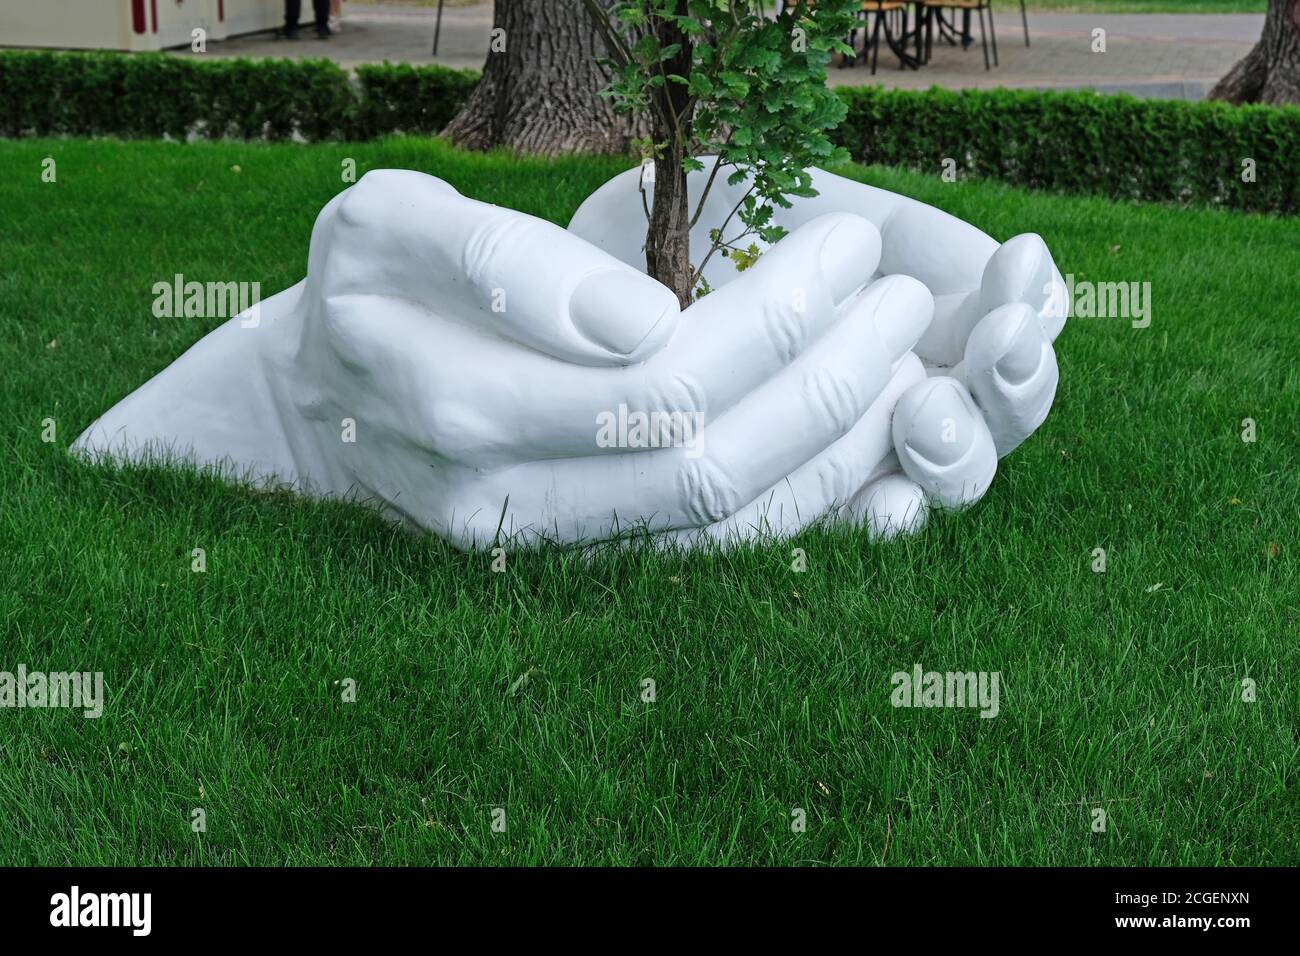 escultura de una mano hecha de yeso sobre un fondo de césped verde.  concepto salvo cuidar de la naturaleza. las manos humanas se reúnen cerca  de un gro Fotografía de stock 